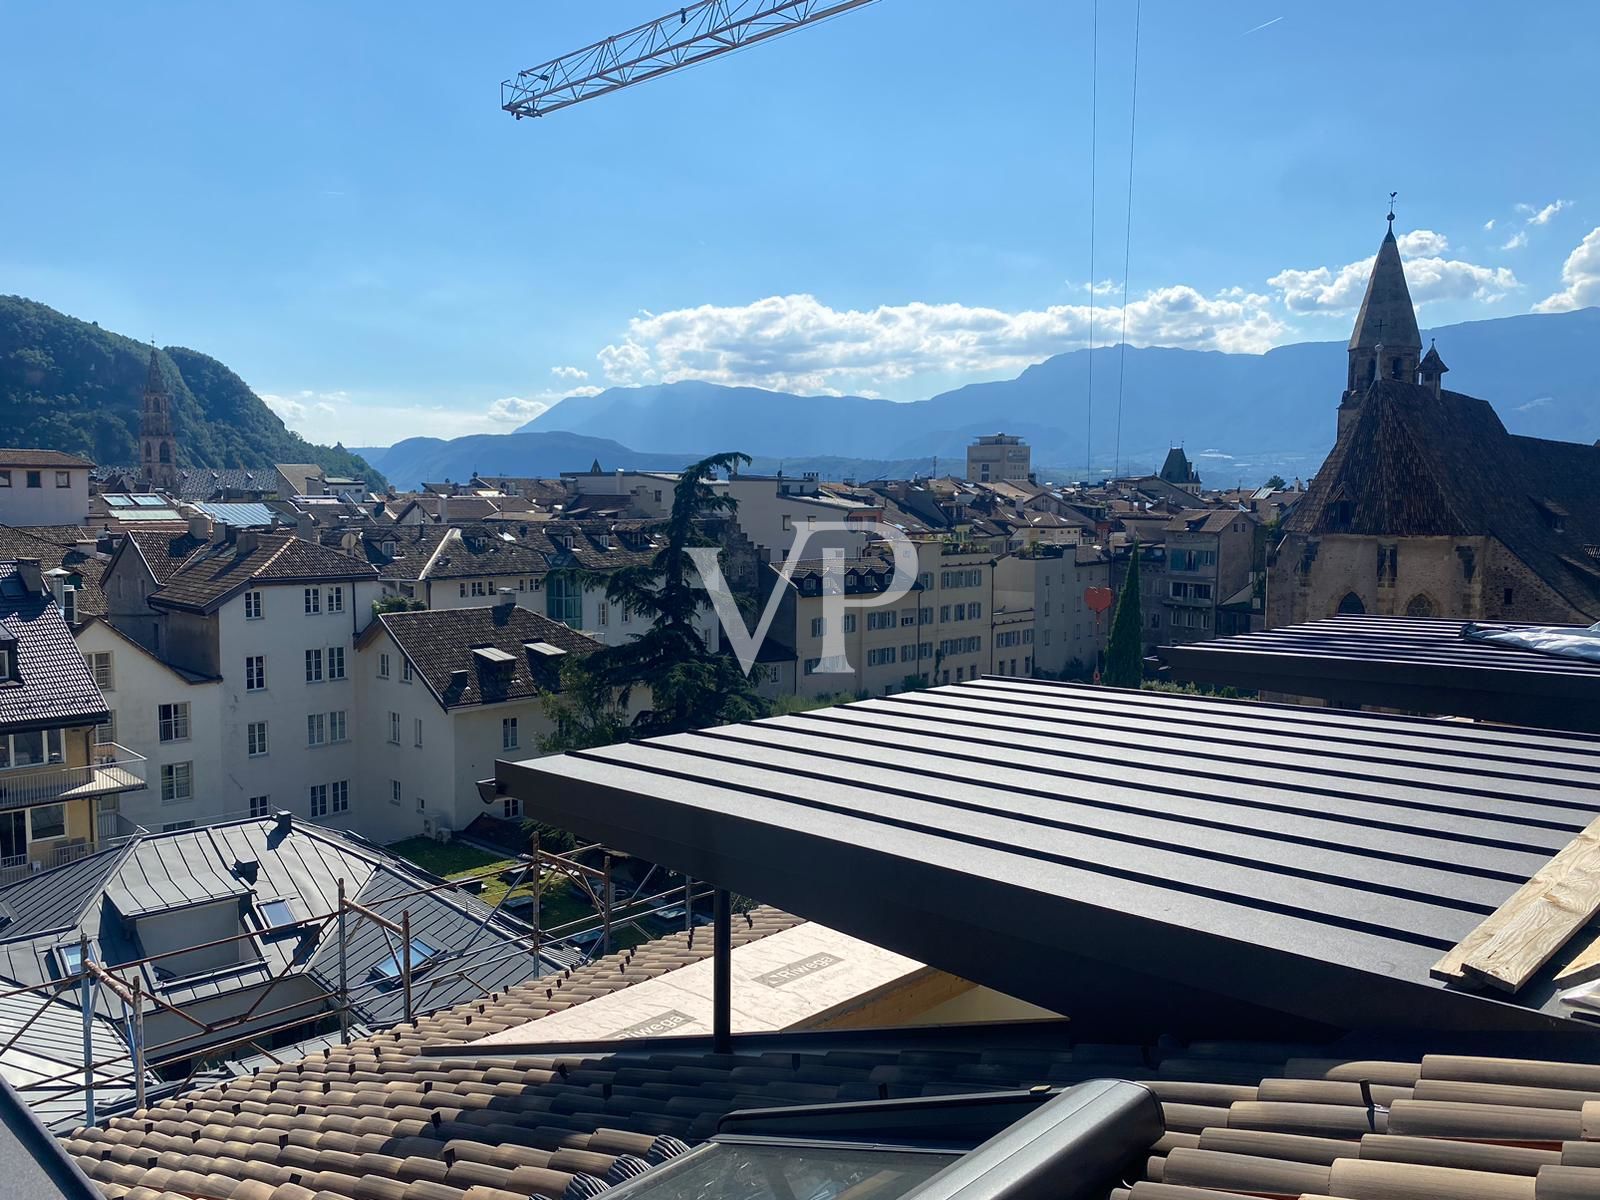 Attico di pregio con vista panoramica nel cuore di Bolzano